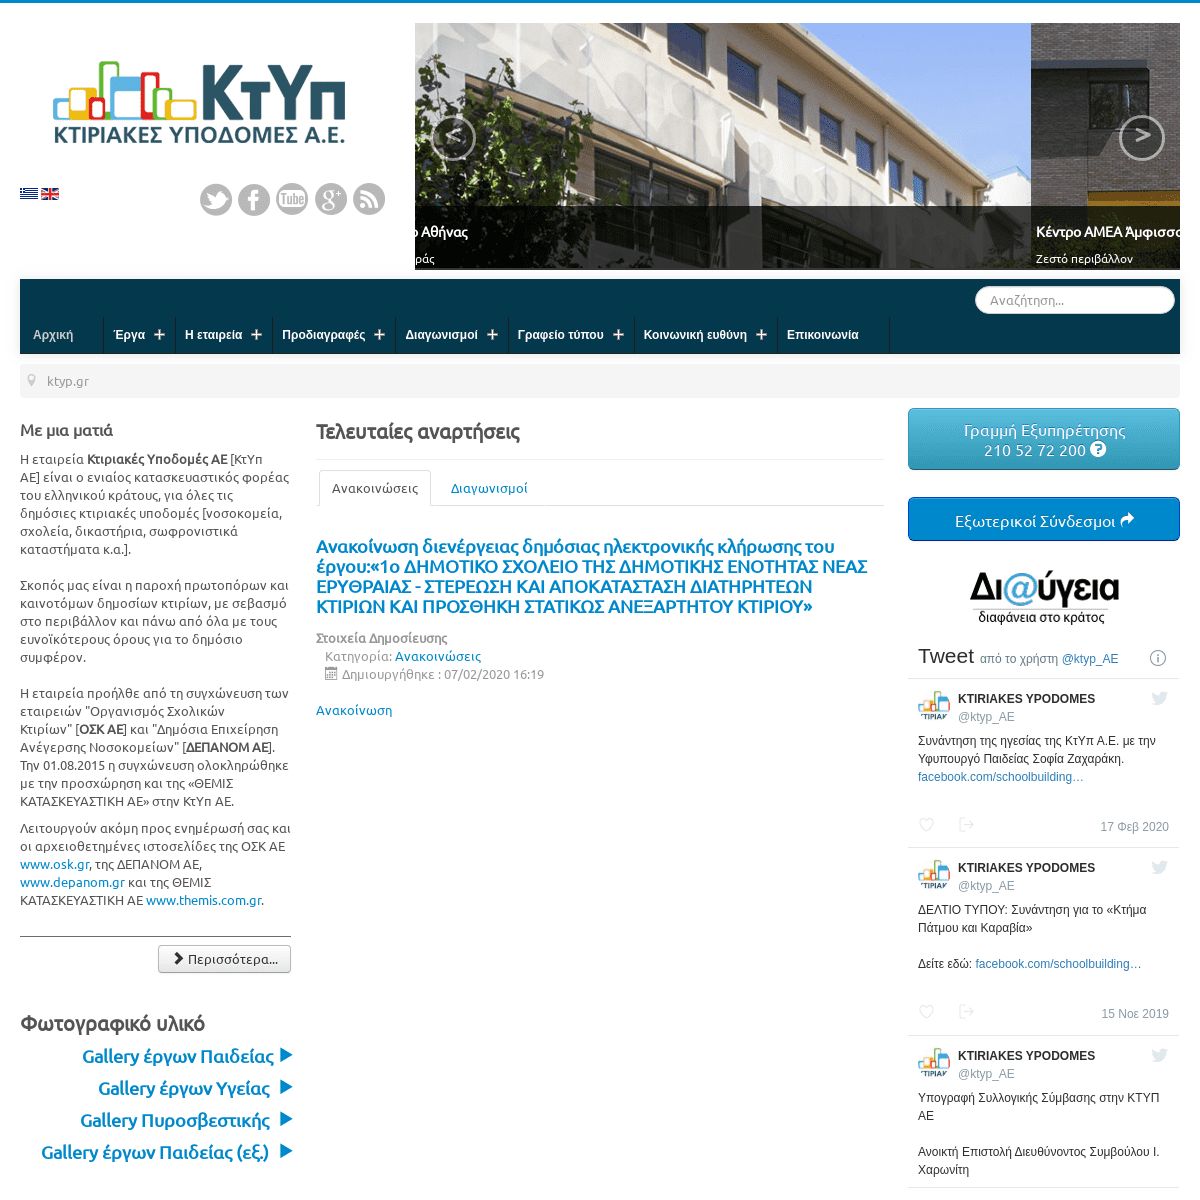 A complete backup of ktyp.gr